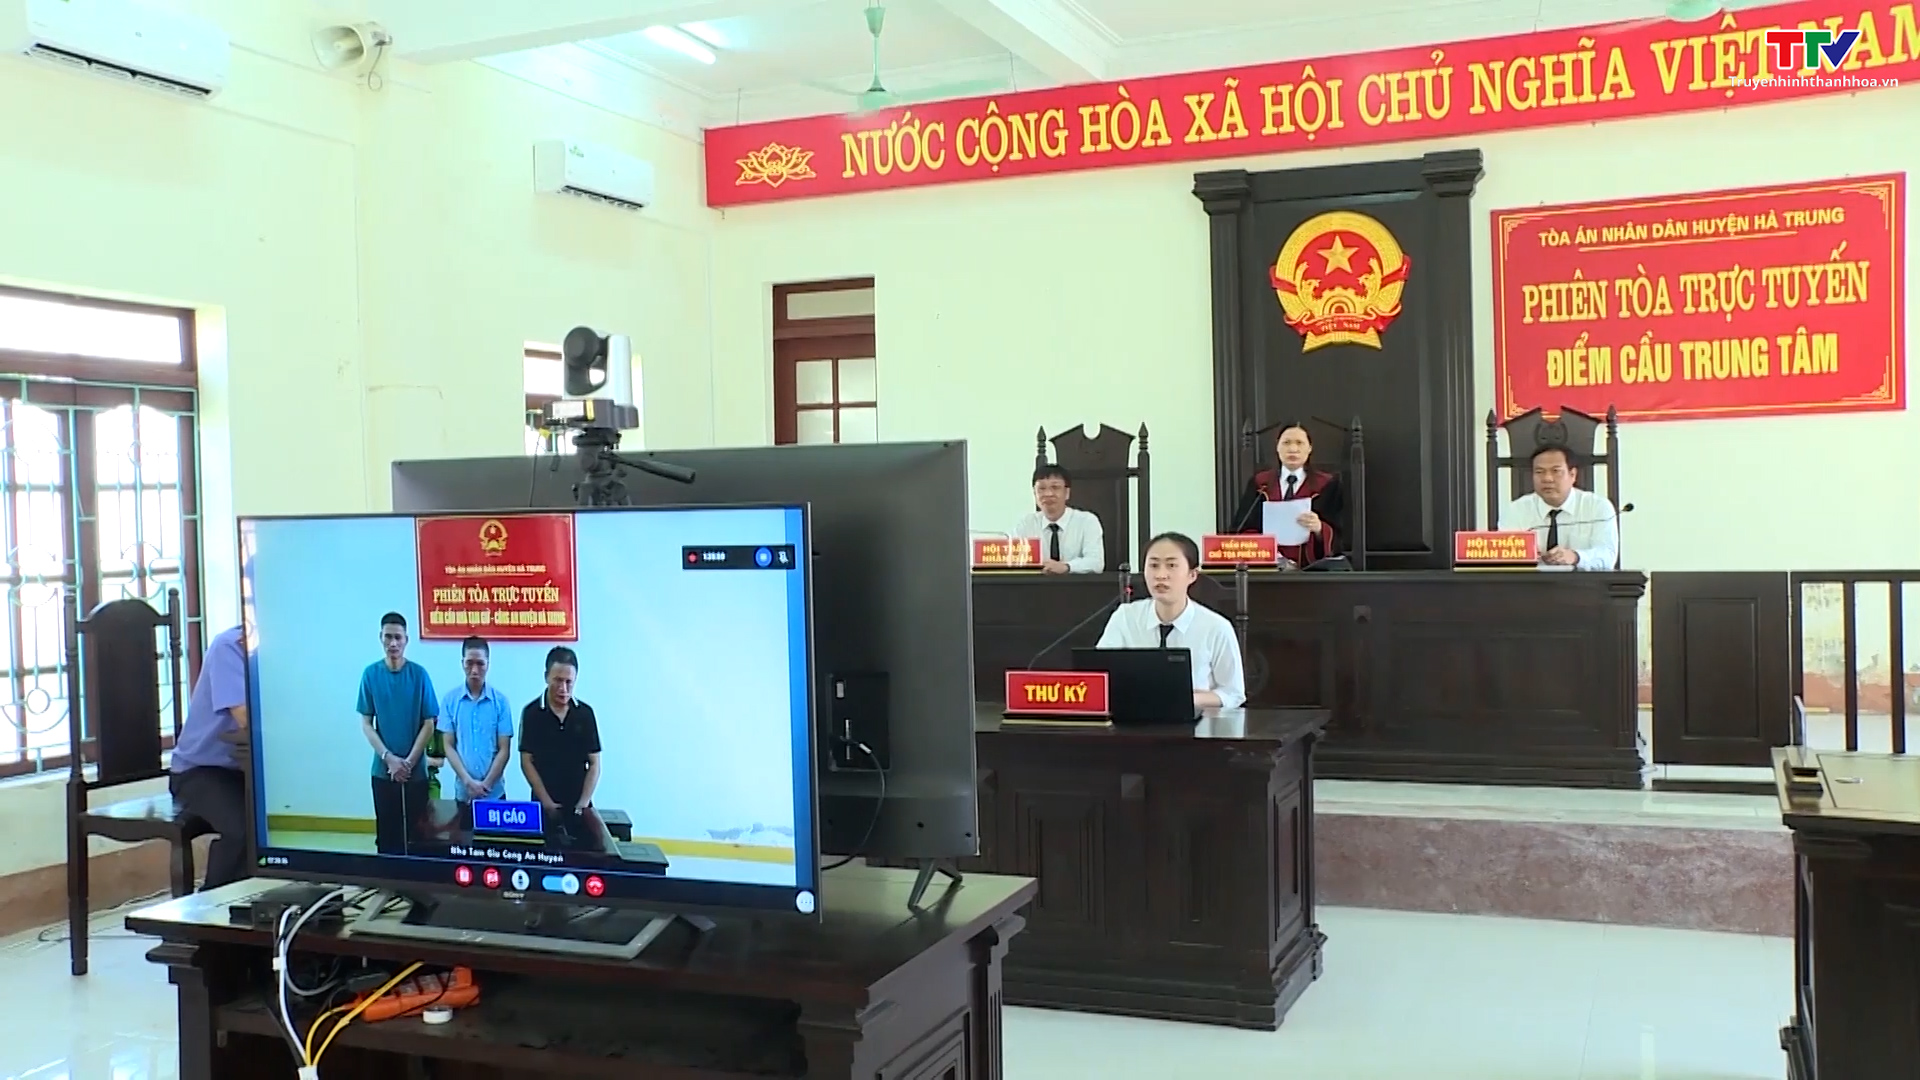 Tòa án Nhân dân huyện Hà Trung tổ chức phiên tòa xét xử trực tuyến - Ảnh 2.